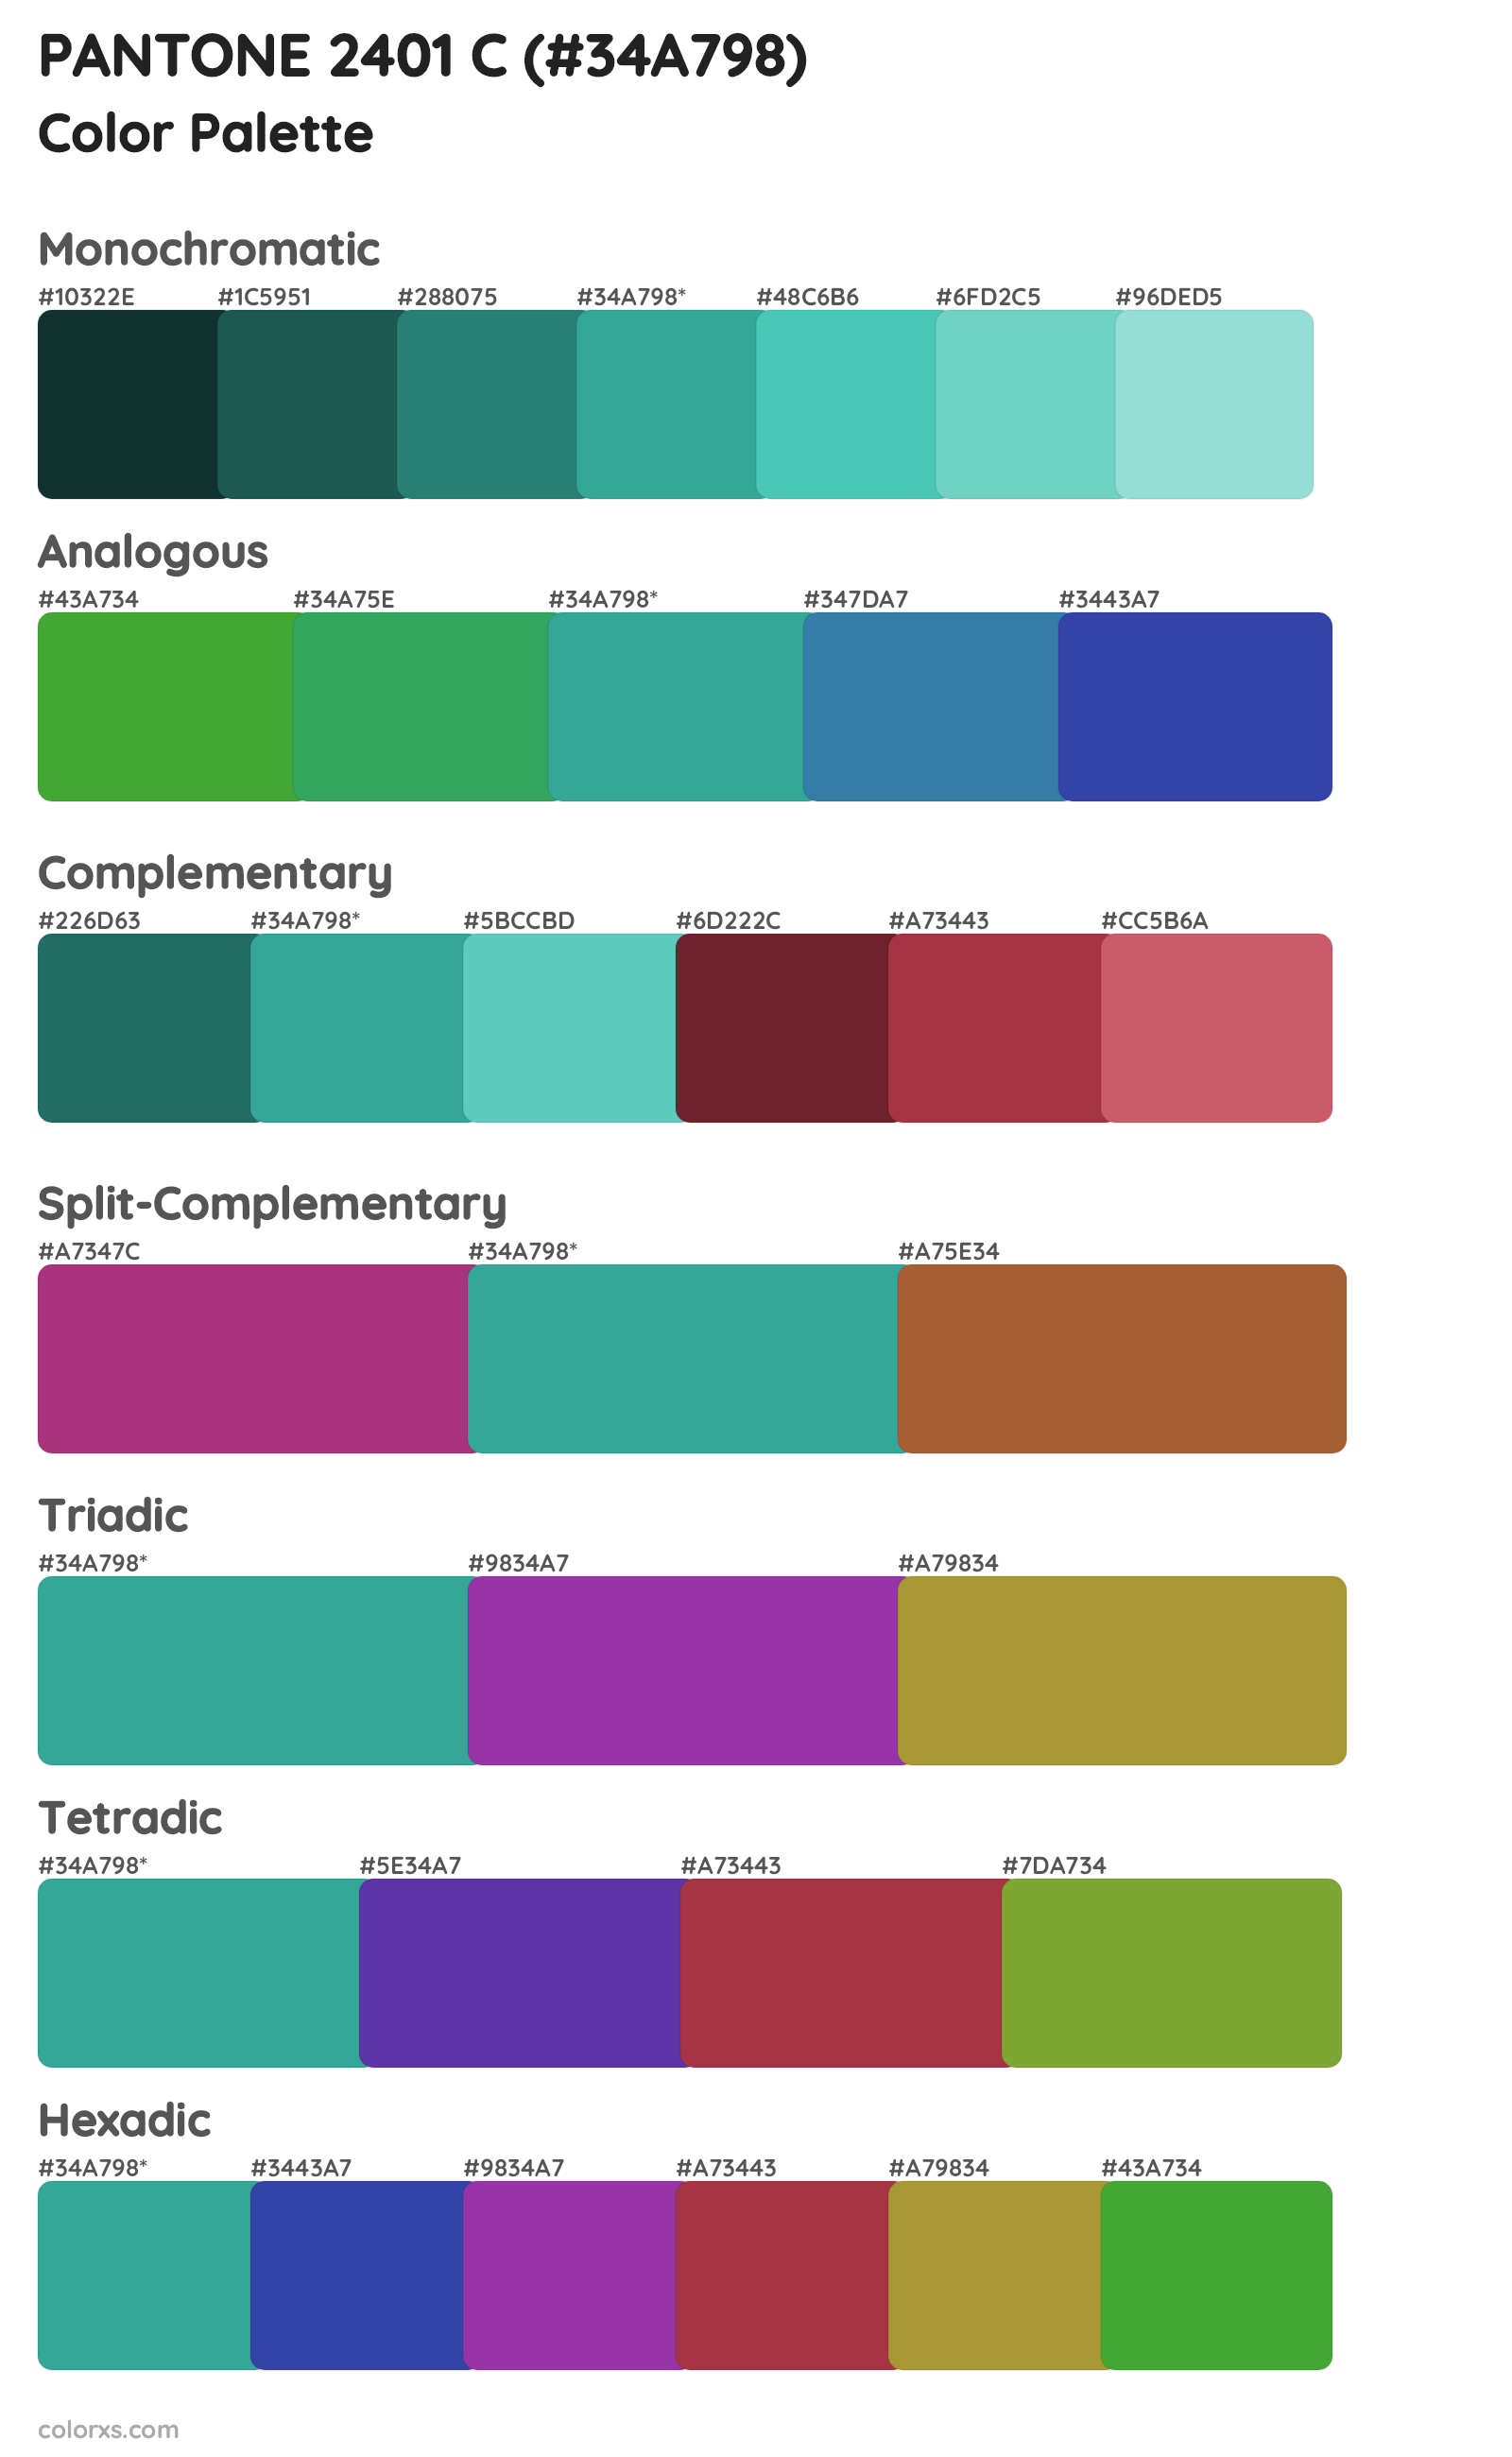 PANTONE 2401 C Color Scheme Palettes